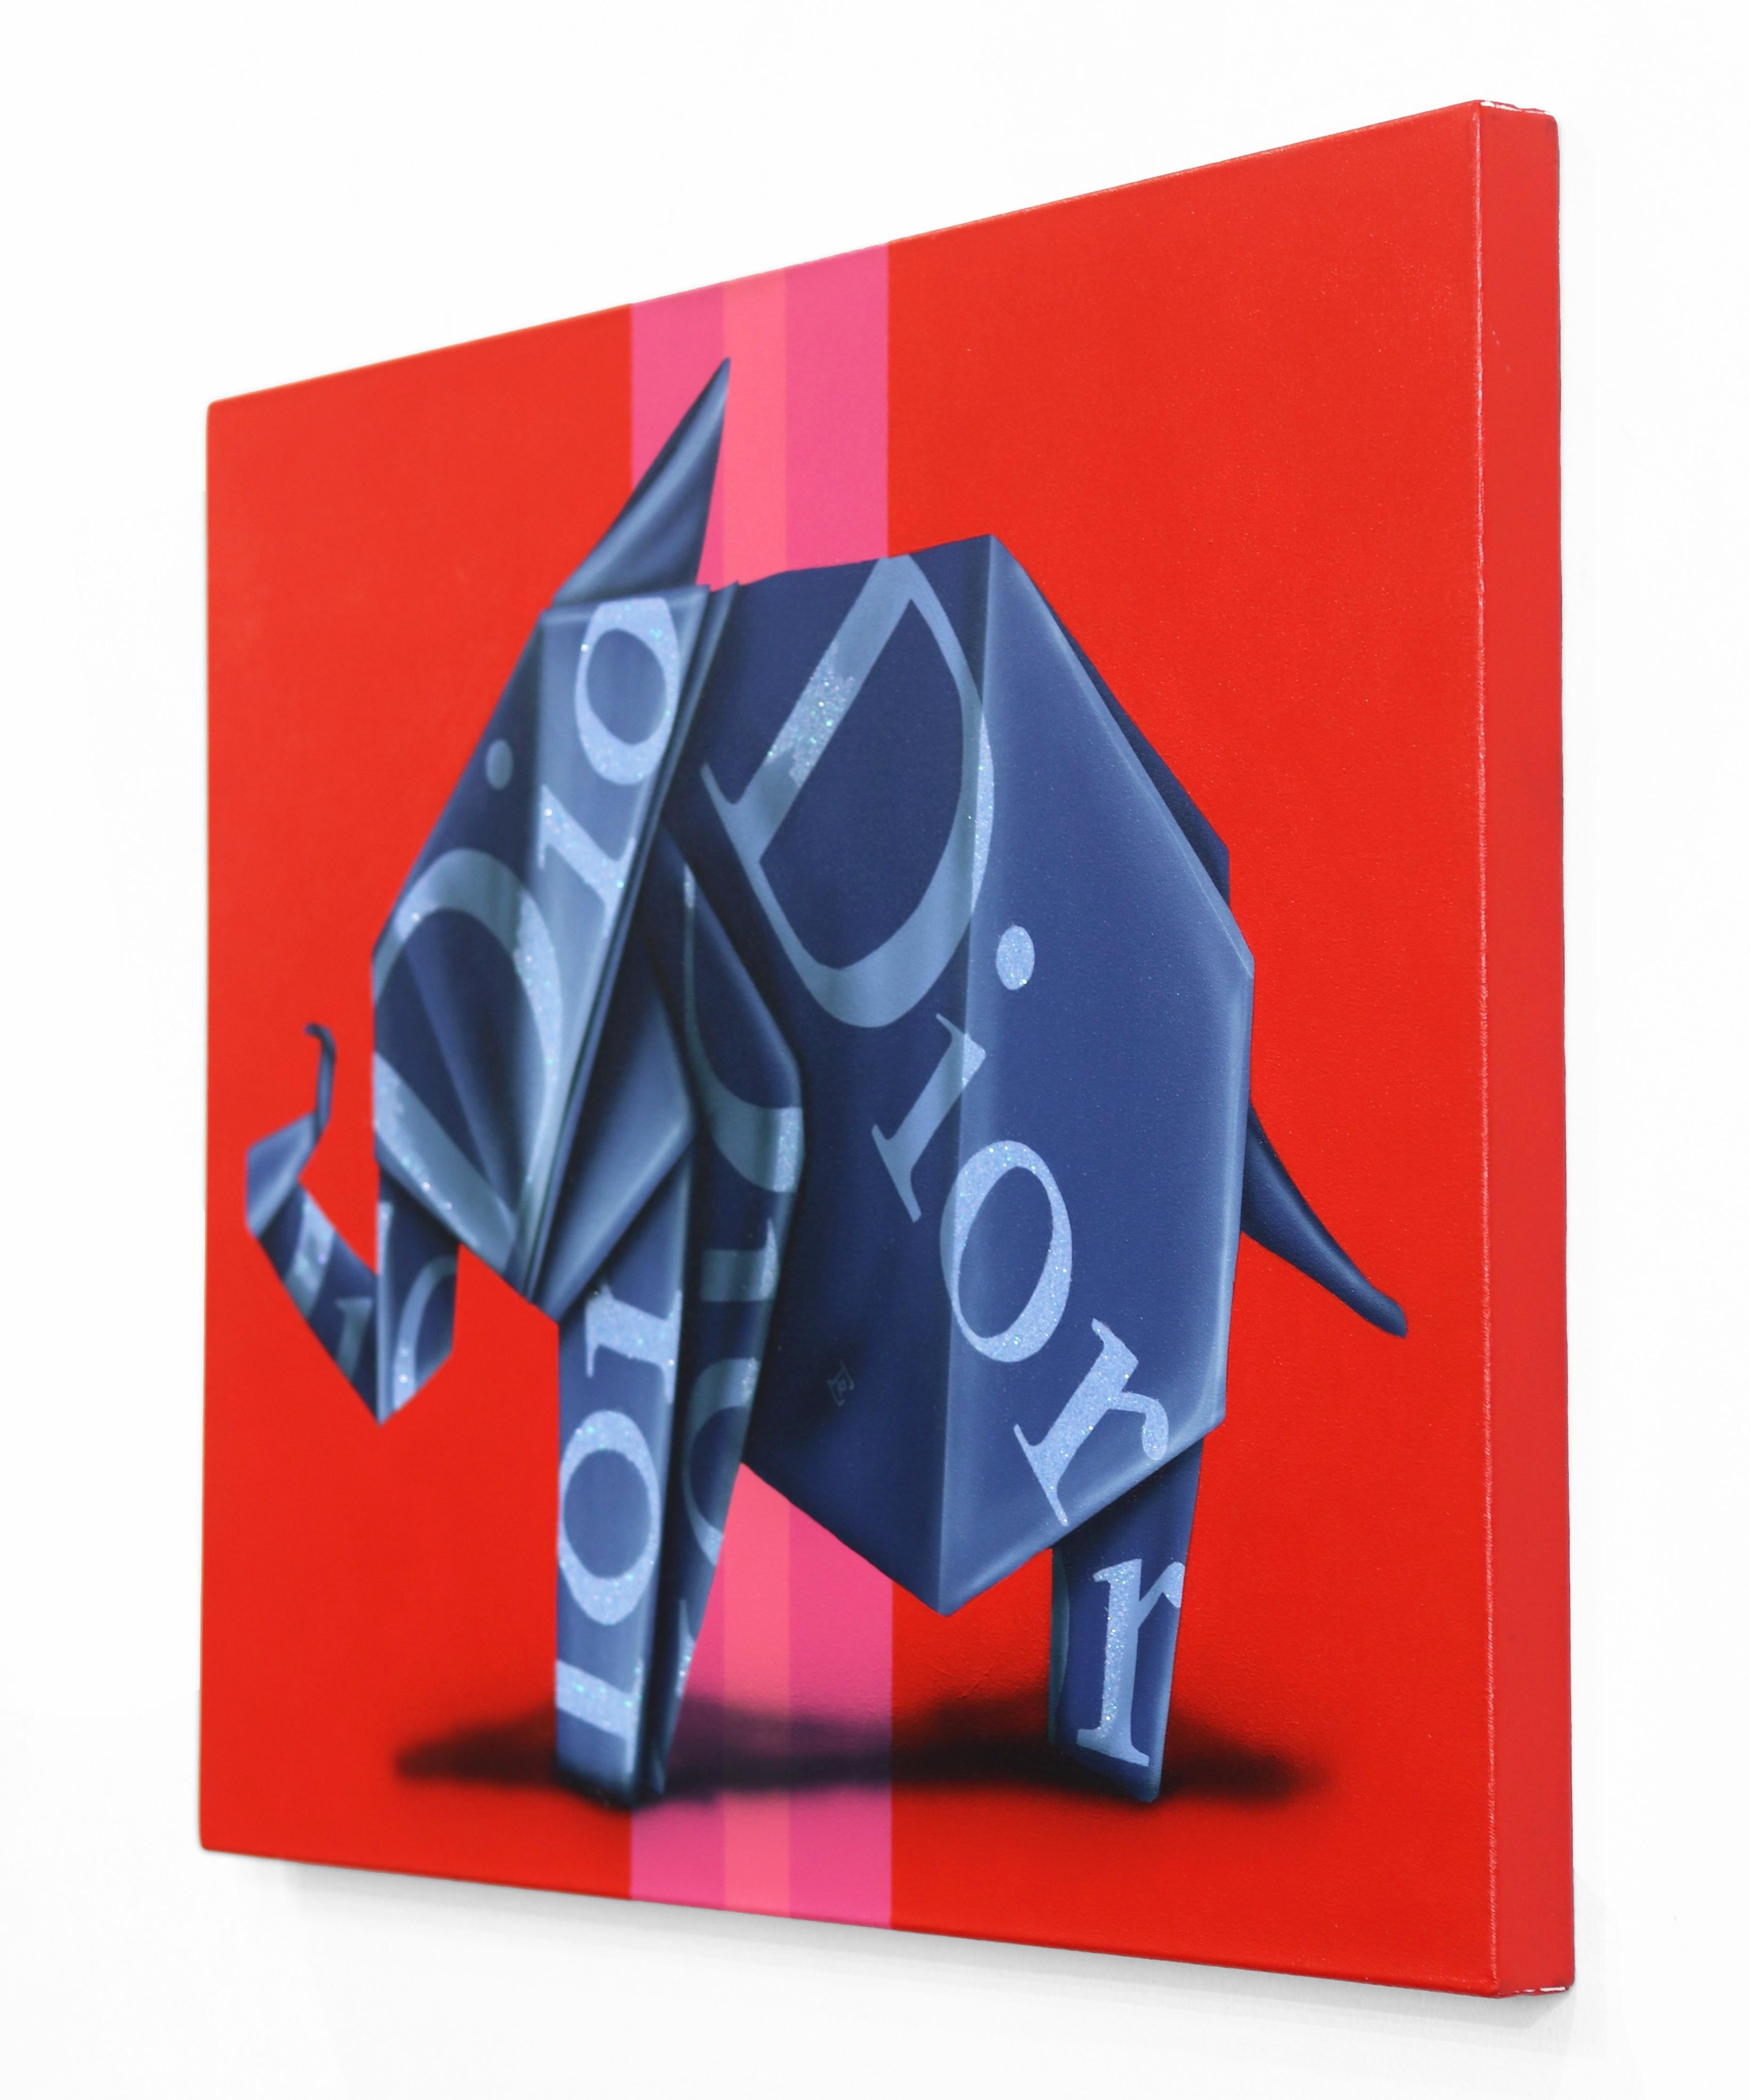 Emilio Ramas fesselnde, von der Pop Art inspirierte Gemälde mit Origami-Tierfiguren sind ein unverwechselbarer und origineller Beitrag zur zeitgenössischen Kunst. Mit einem lebendigen Zusammenspiel aus kräftigen Farben, Logos und Anspielungen auf